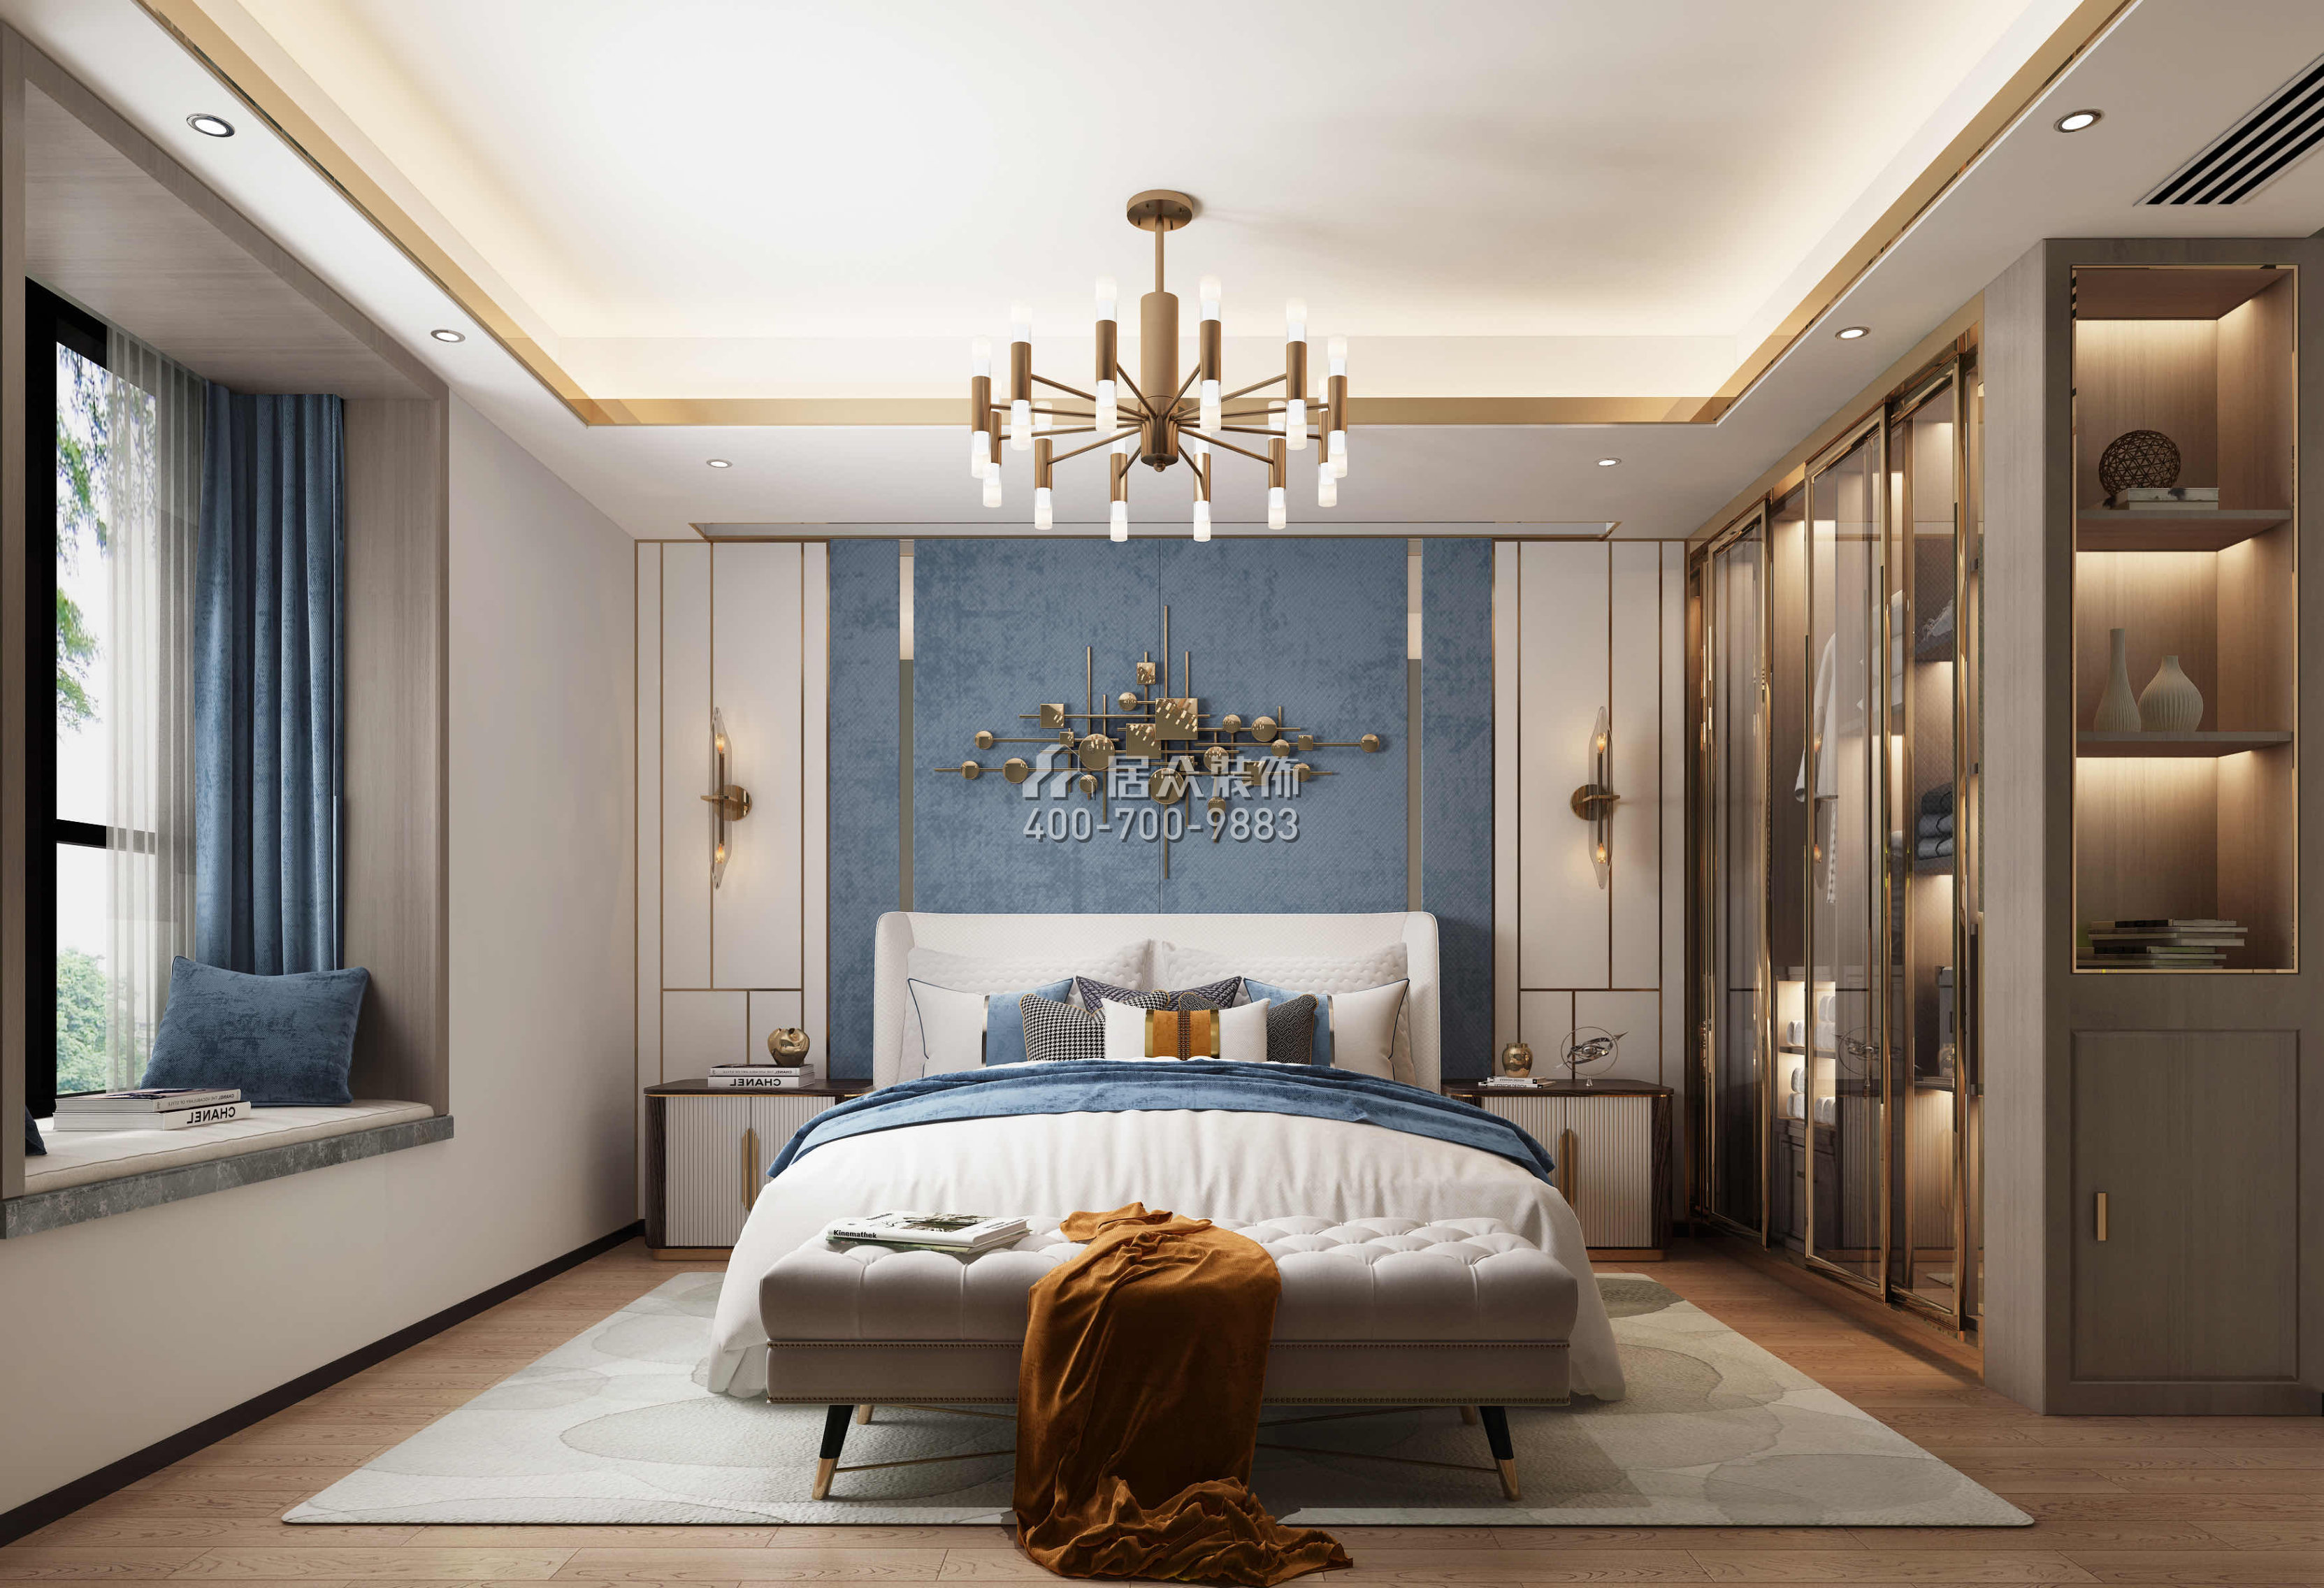 翡翠山湖一期180平方米现代简约风格平层户型卧室装修效果图